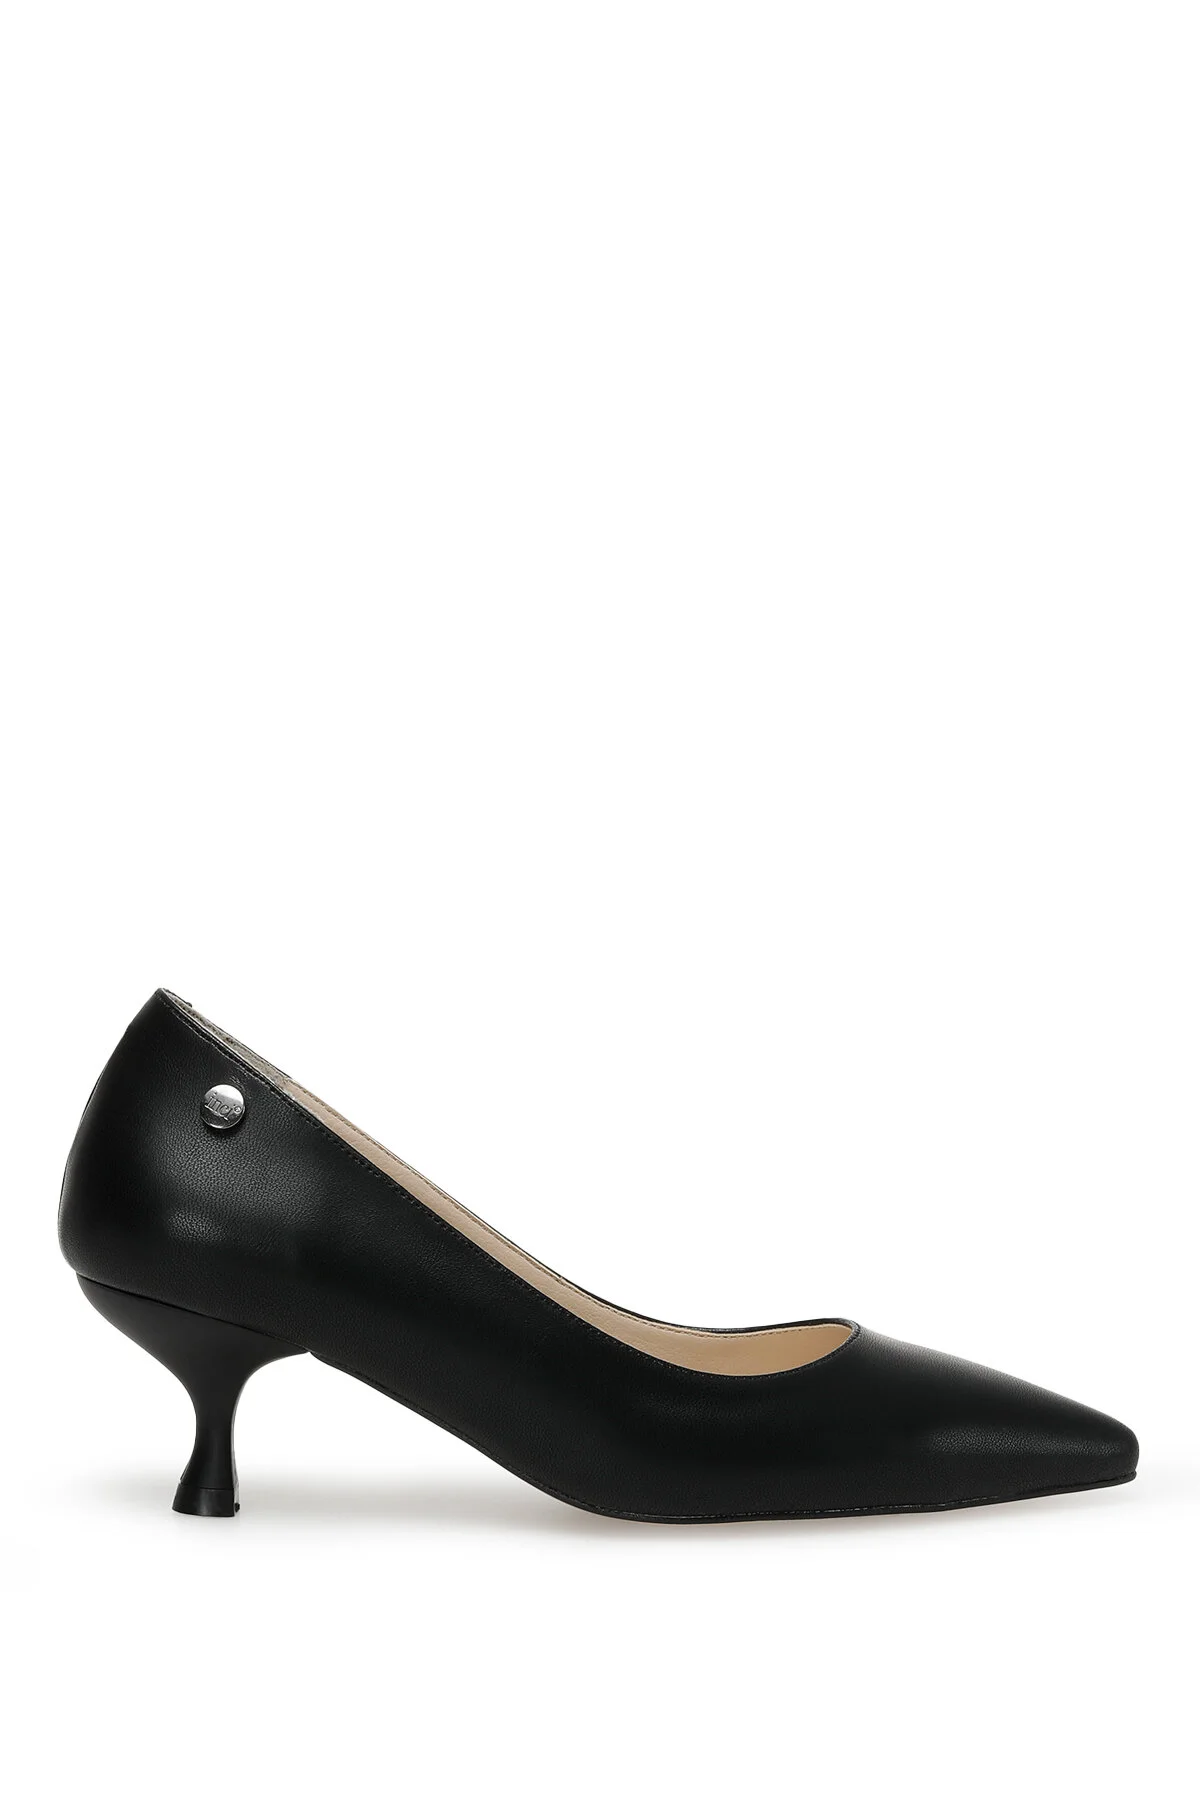 TRUDY 3FX Kadın Topuklu Ayakkabı-Siyah - Thumbnail